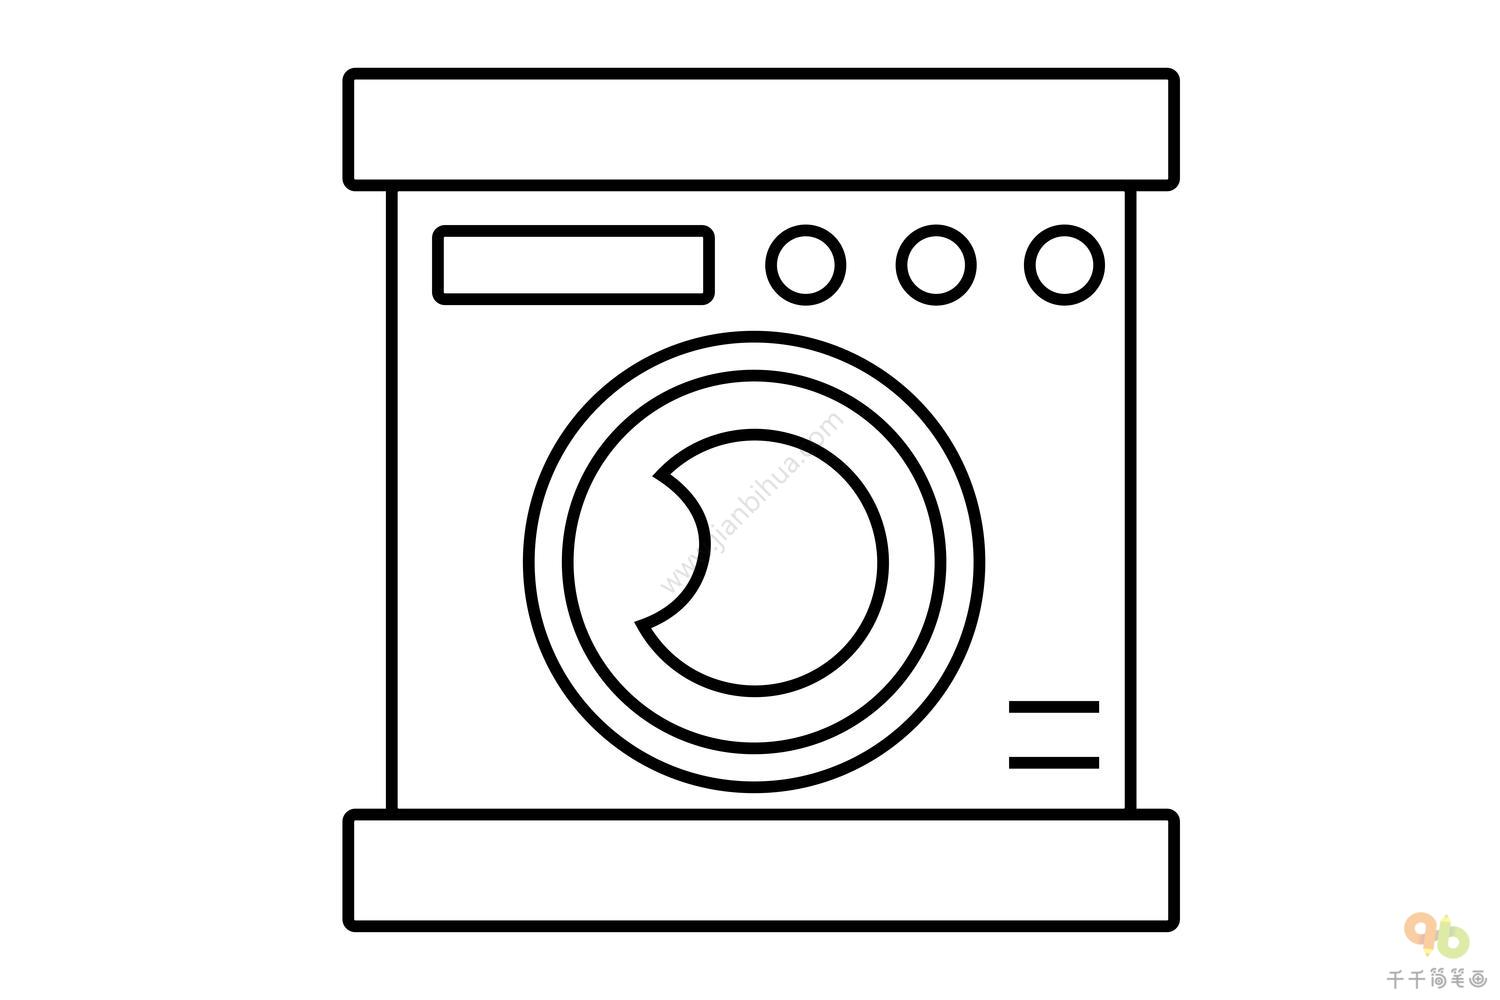 洗漂亮衣服的洗衣机简笔画 家用电器简笔画